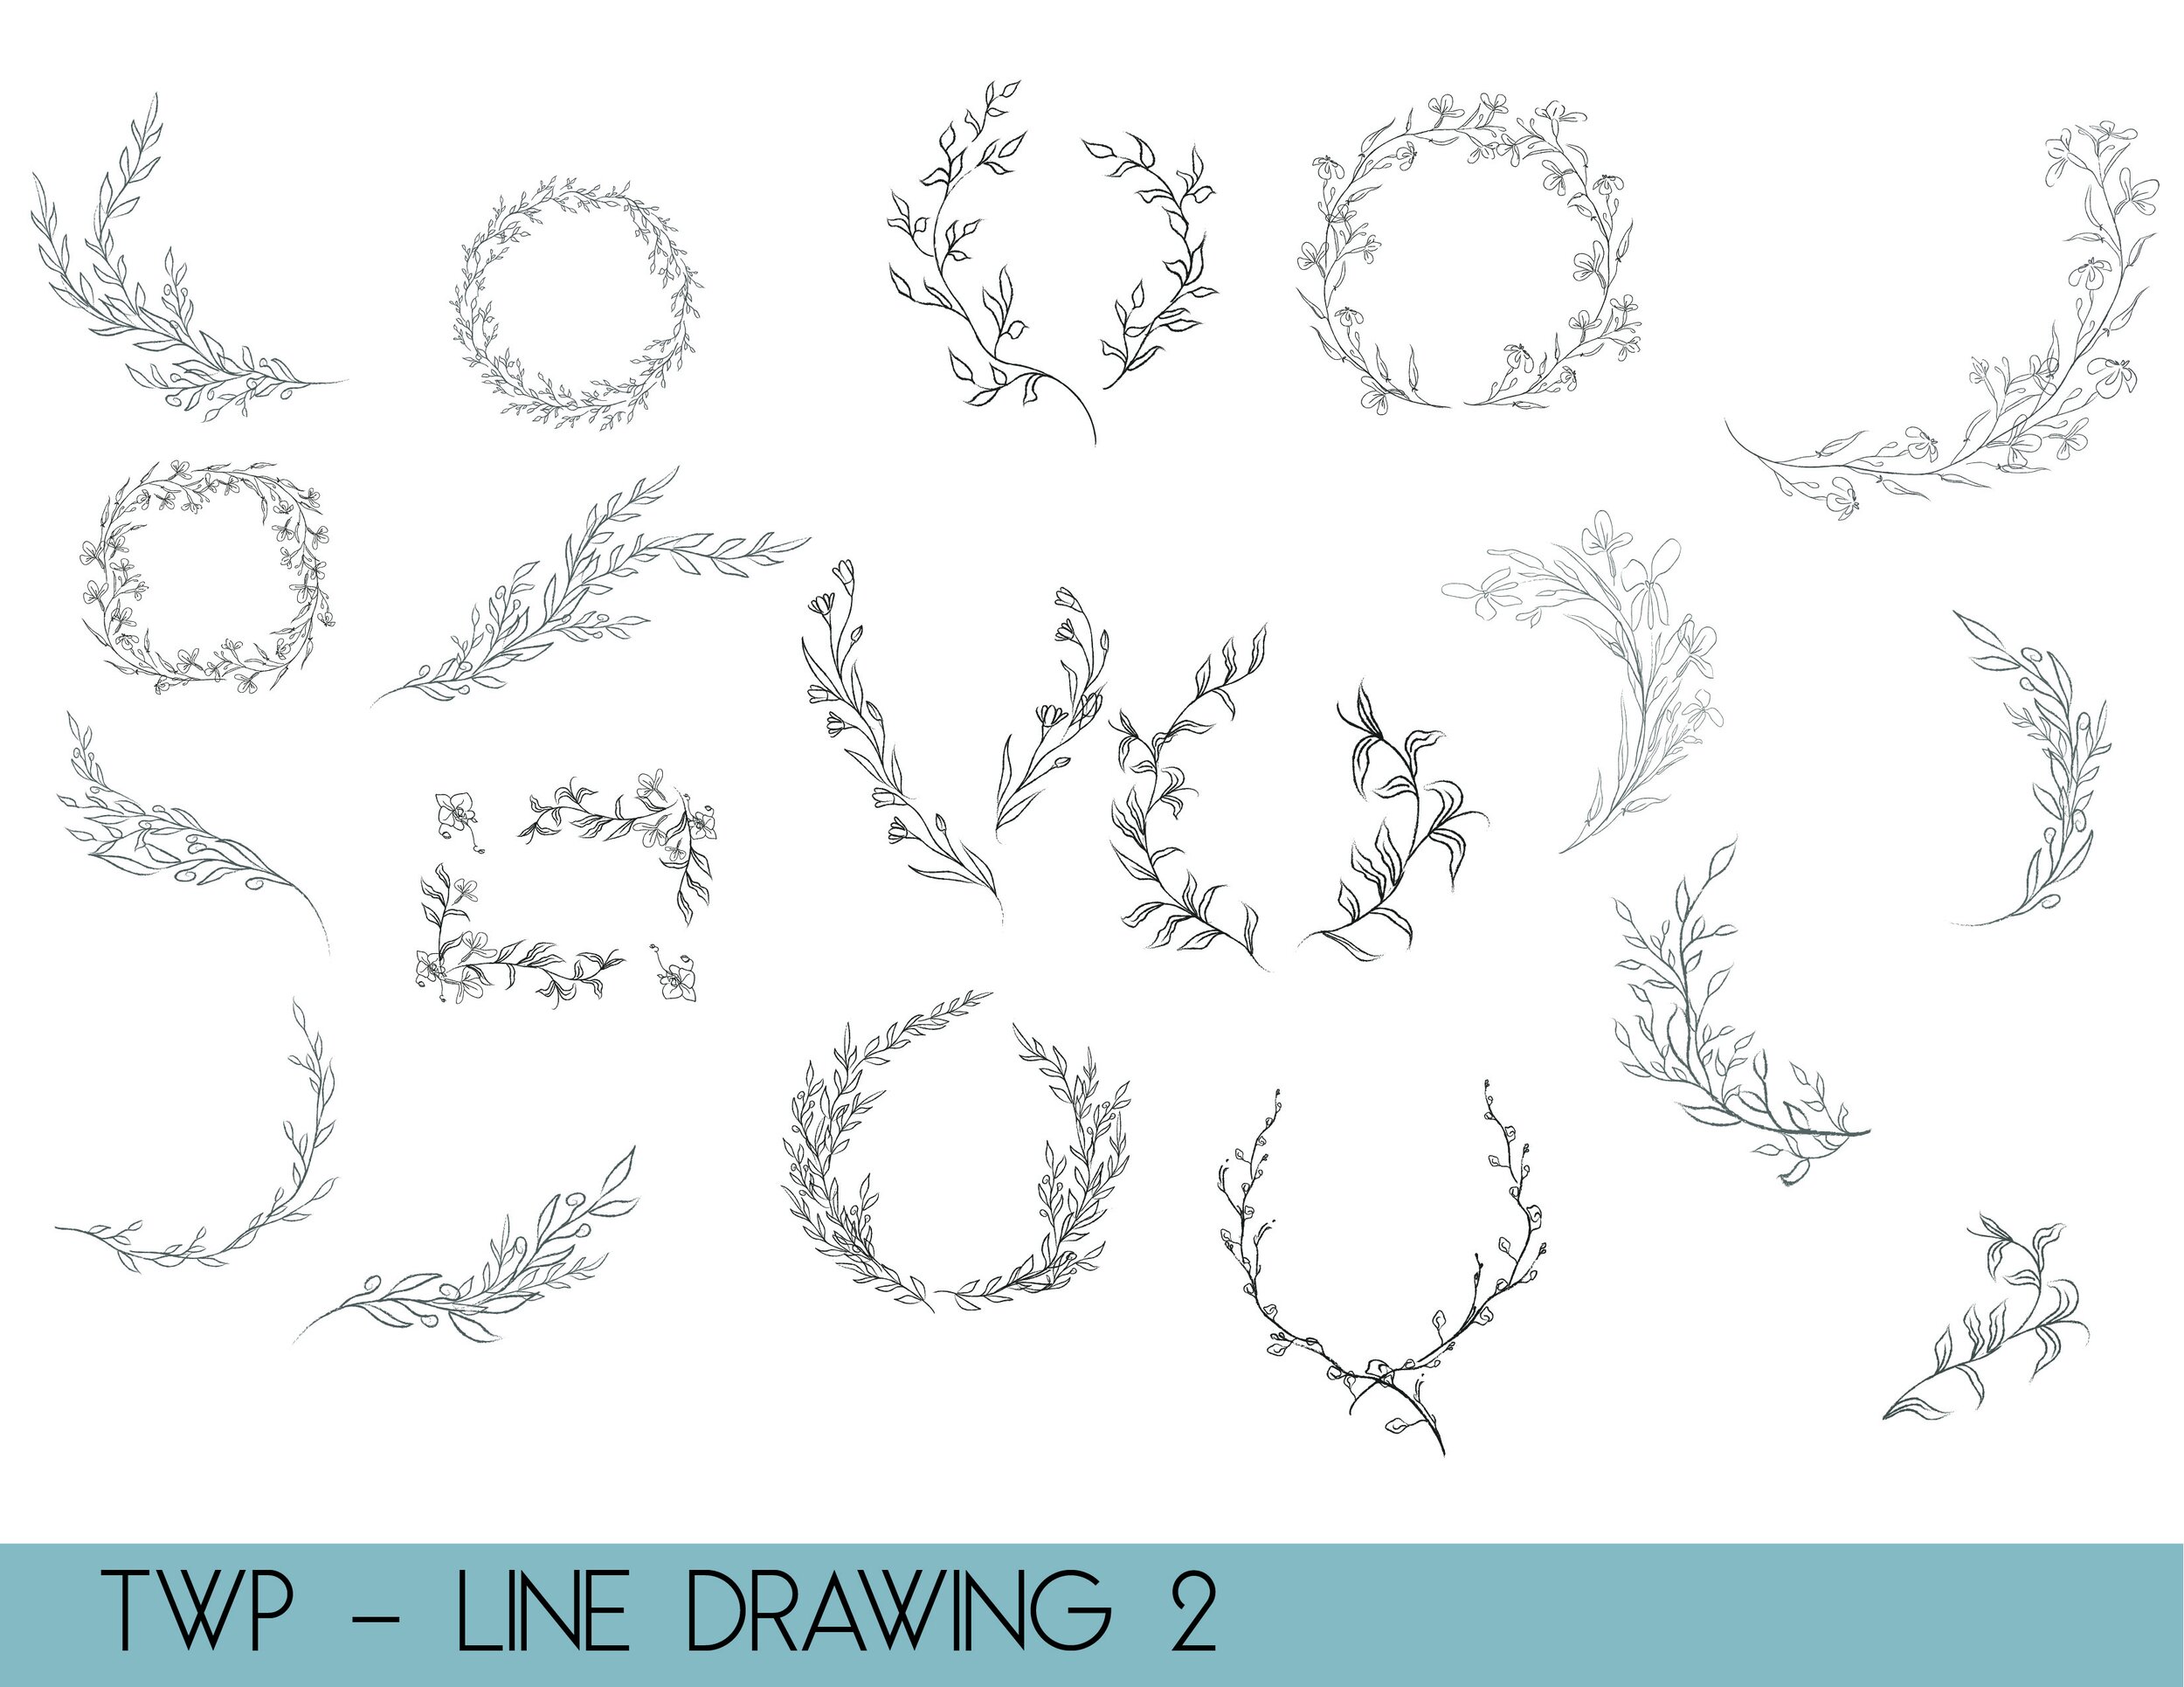 line drawings - website2.jpg